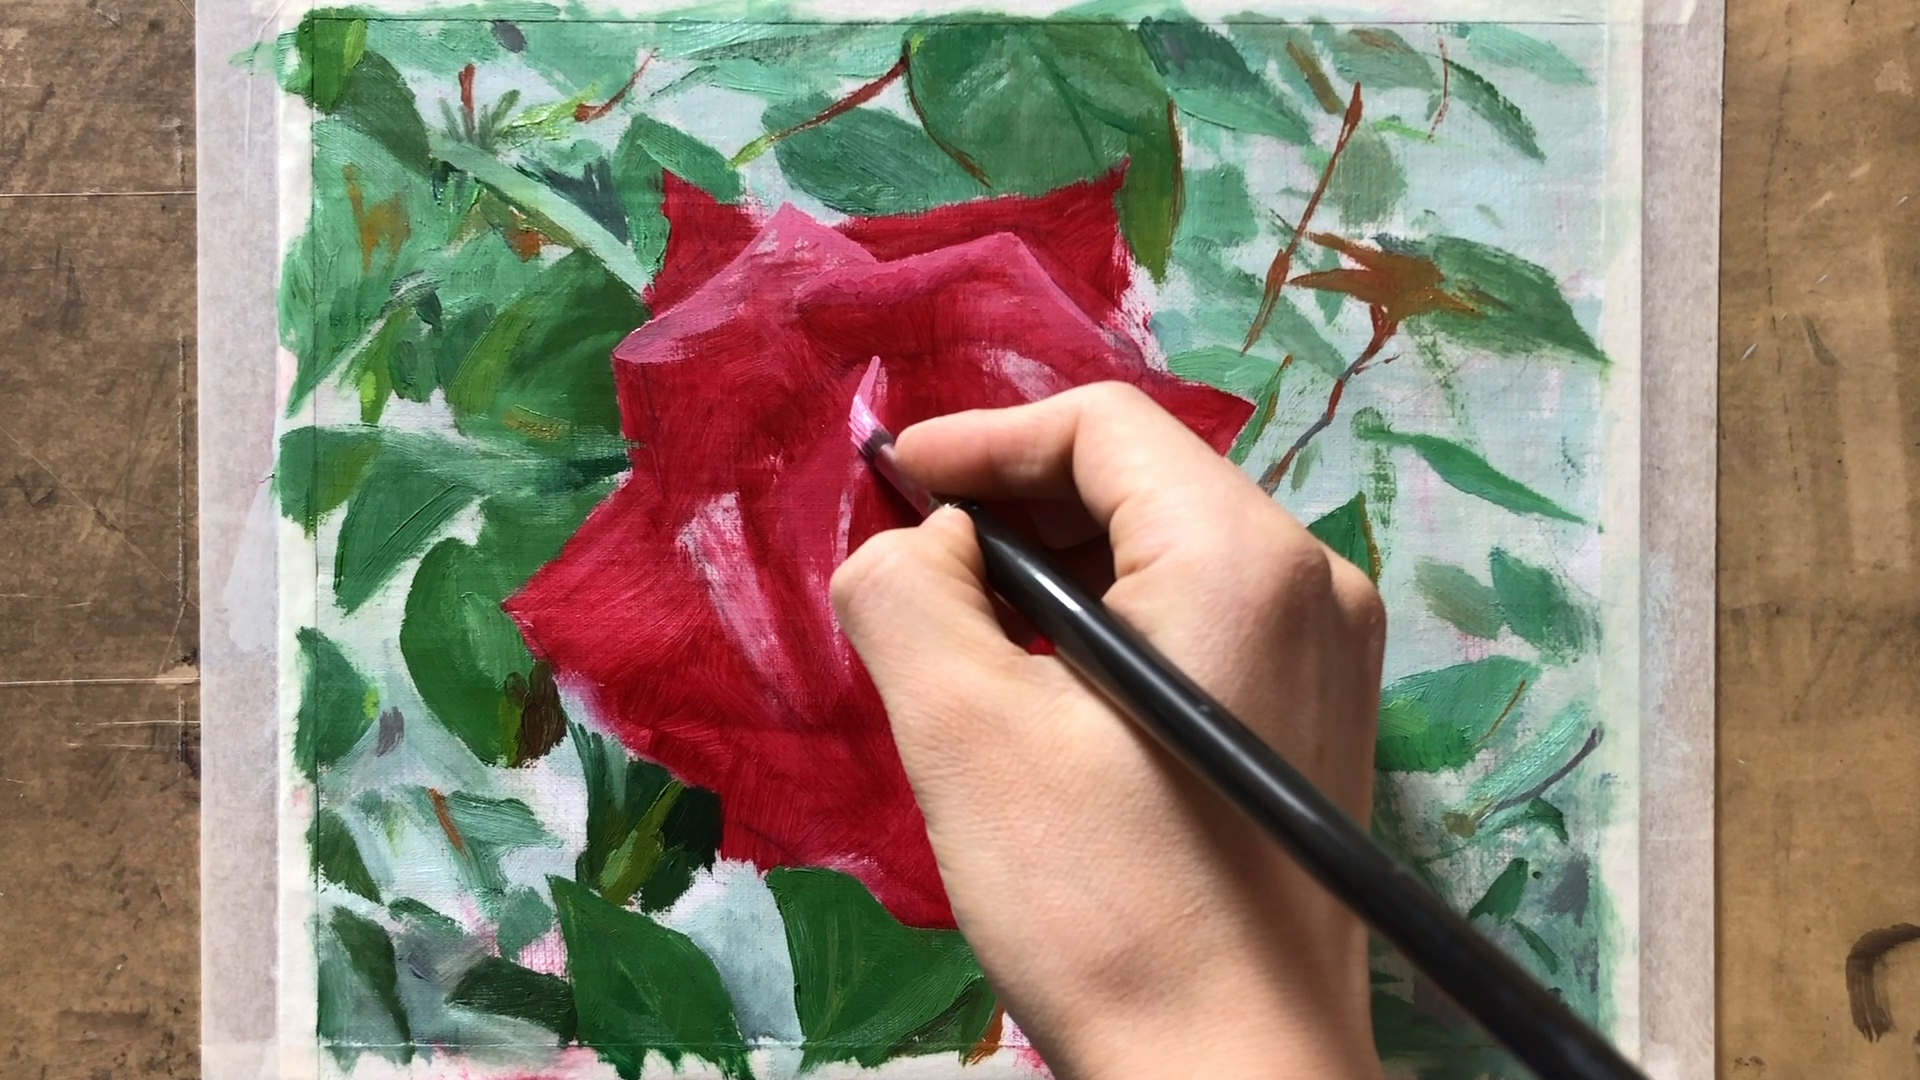 油絵で花を描く方法とコツを簡単に徹底的に解説します 初心者の方はぜひ参考にしてください Houichi美術絵描き研究所